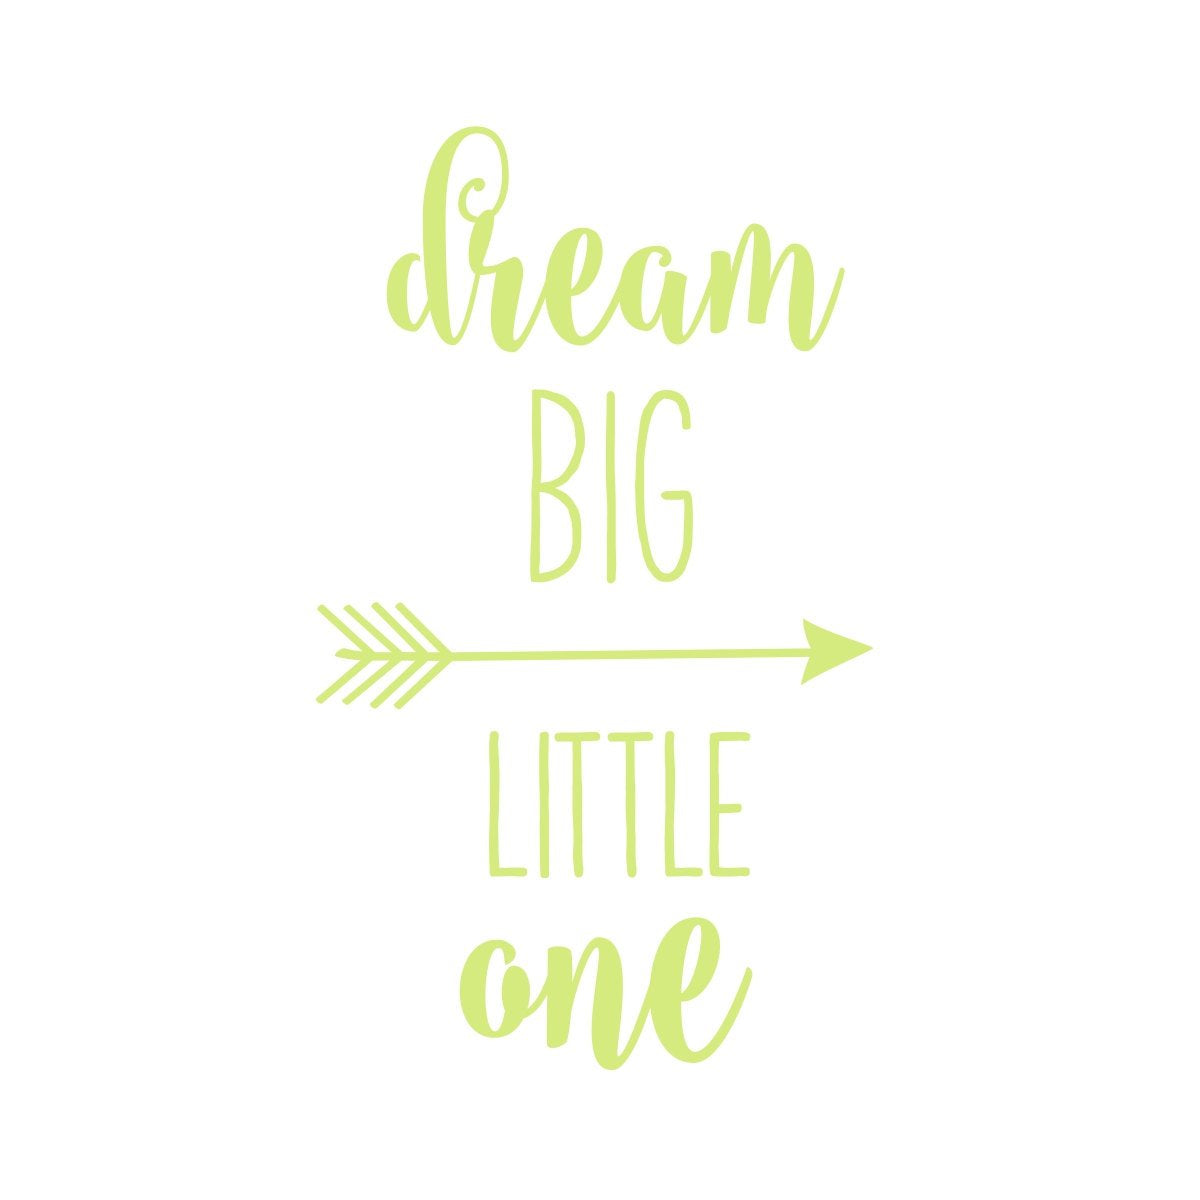 Dream Big Little One Wall Decal | Nursery Decor